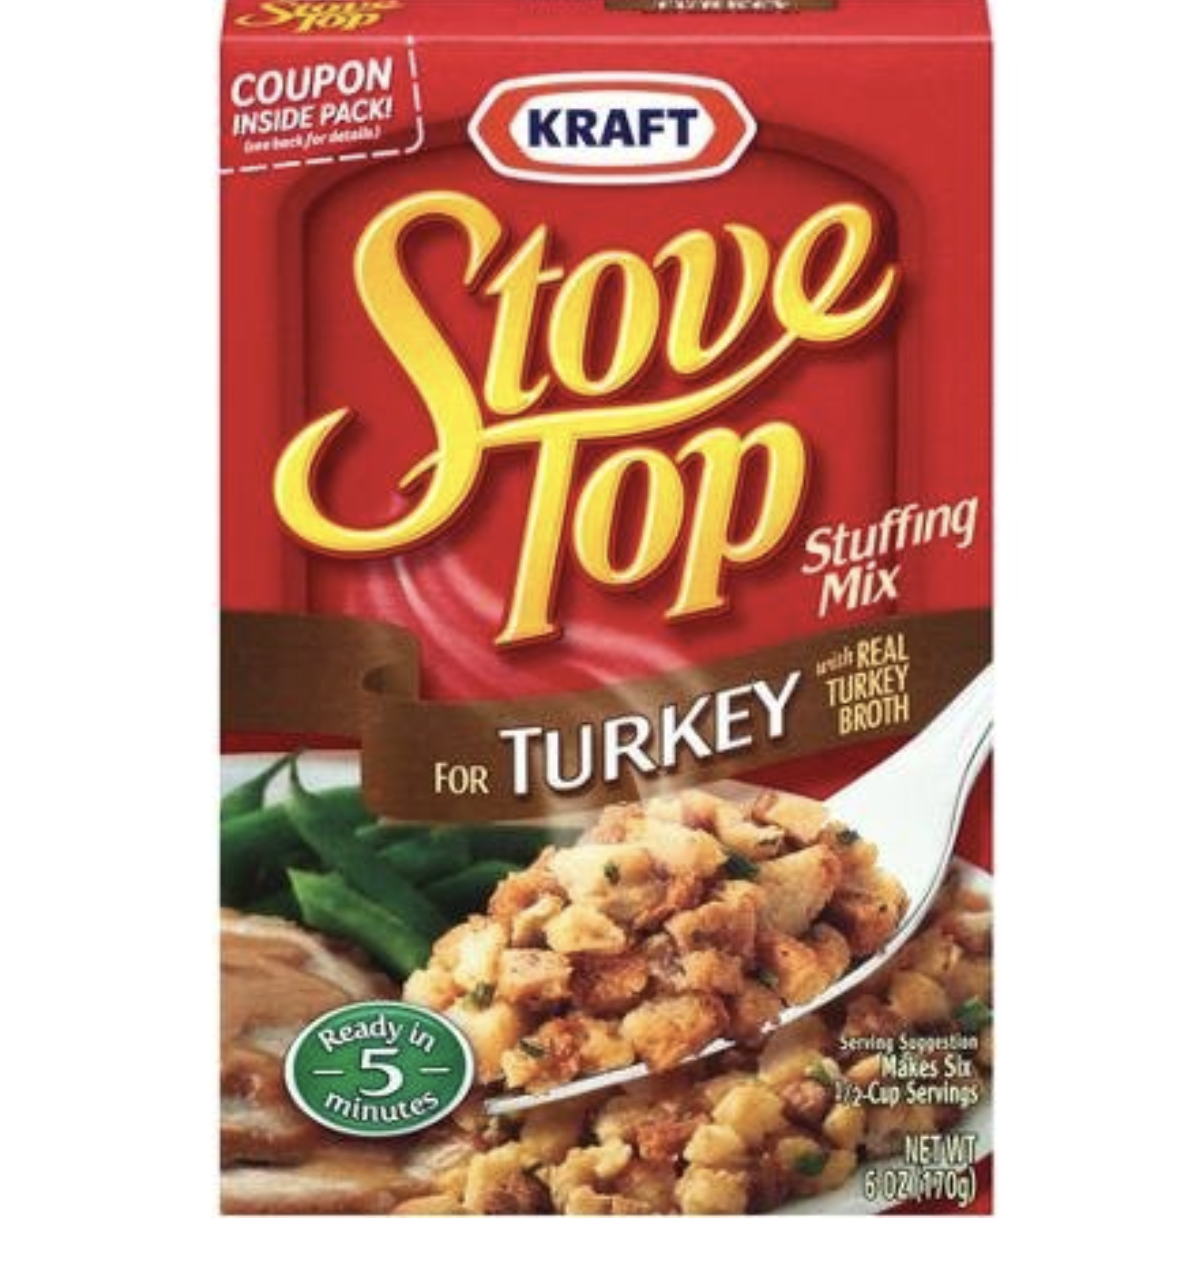 Kraft&#x27;s Stove Top Stuffing Mix box